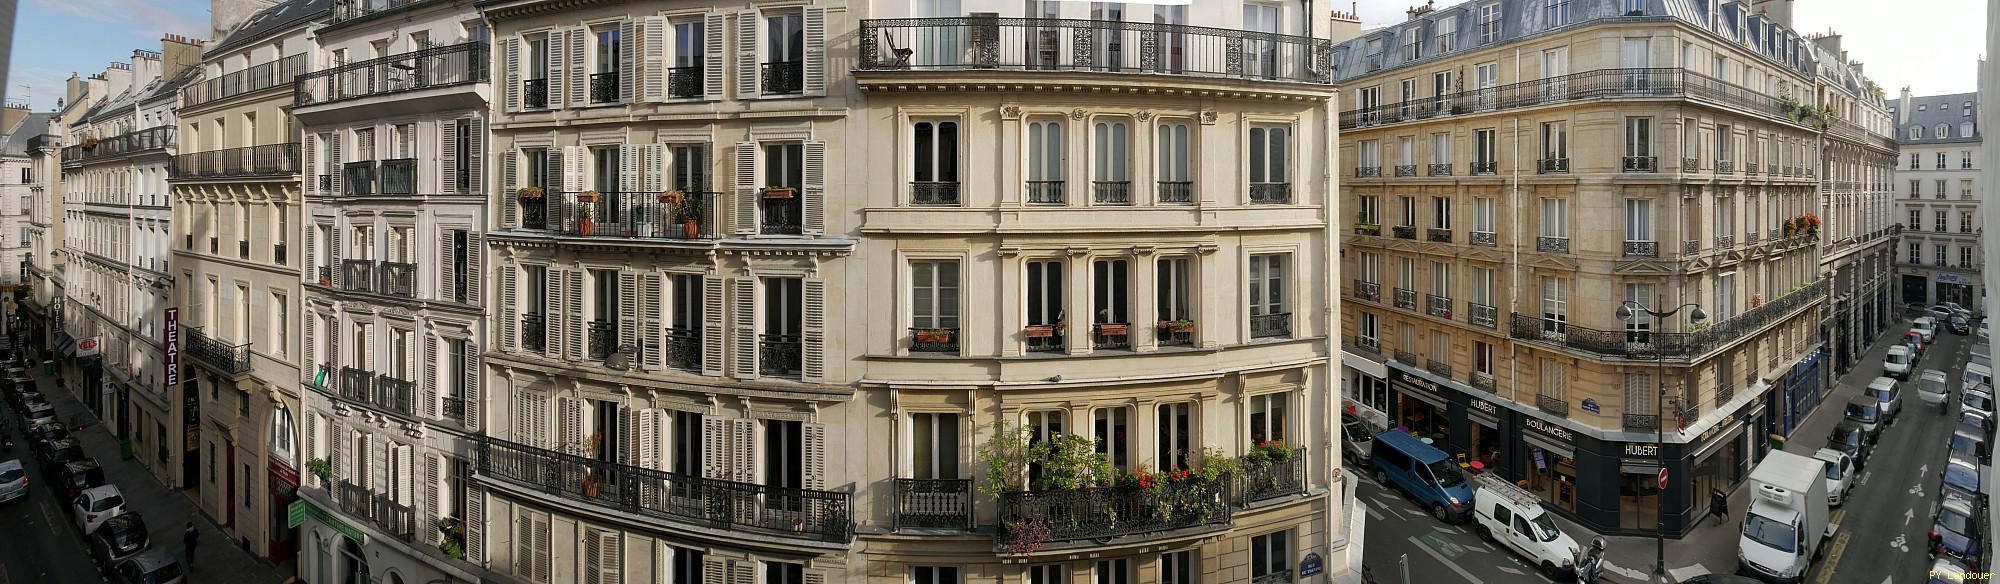 Paris vu d'en haut,  9 Rue de Trvise